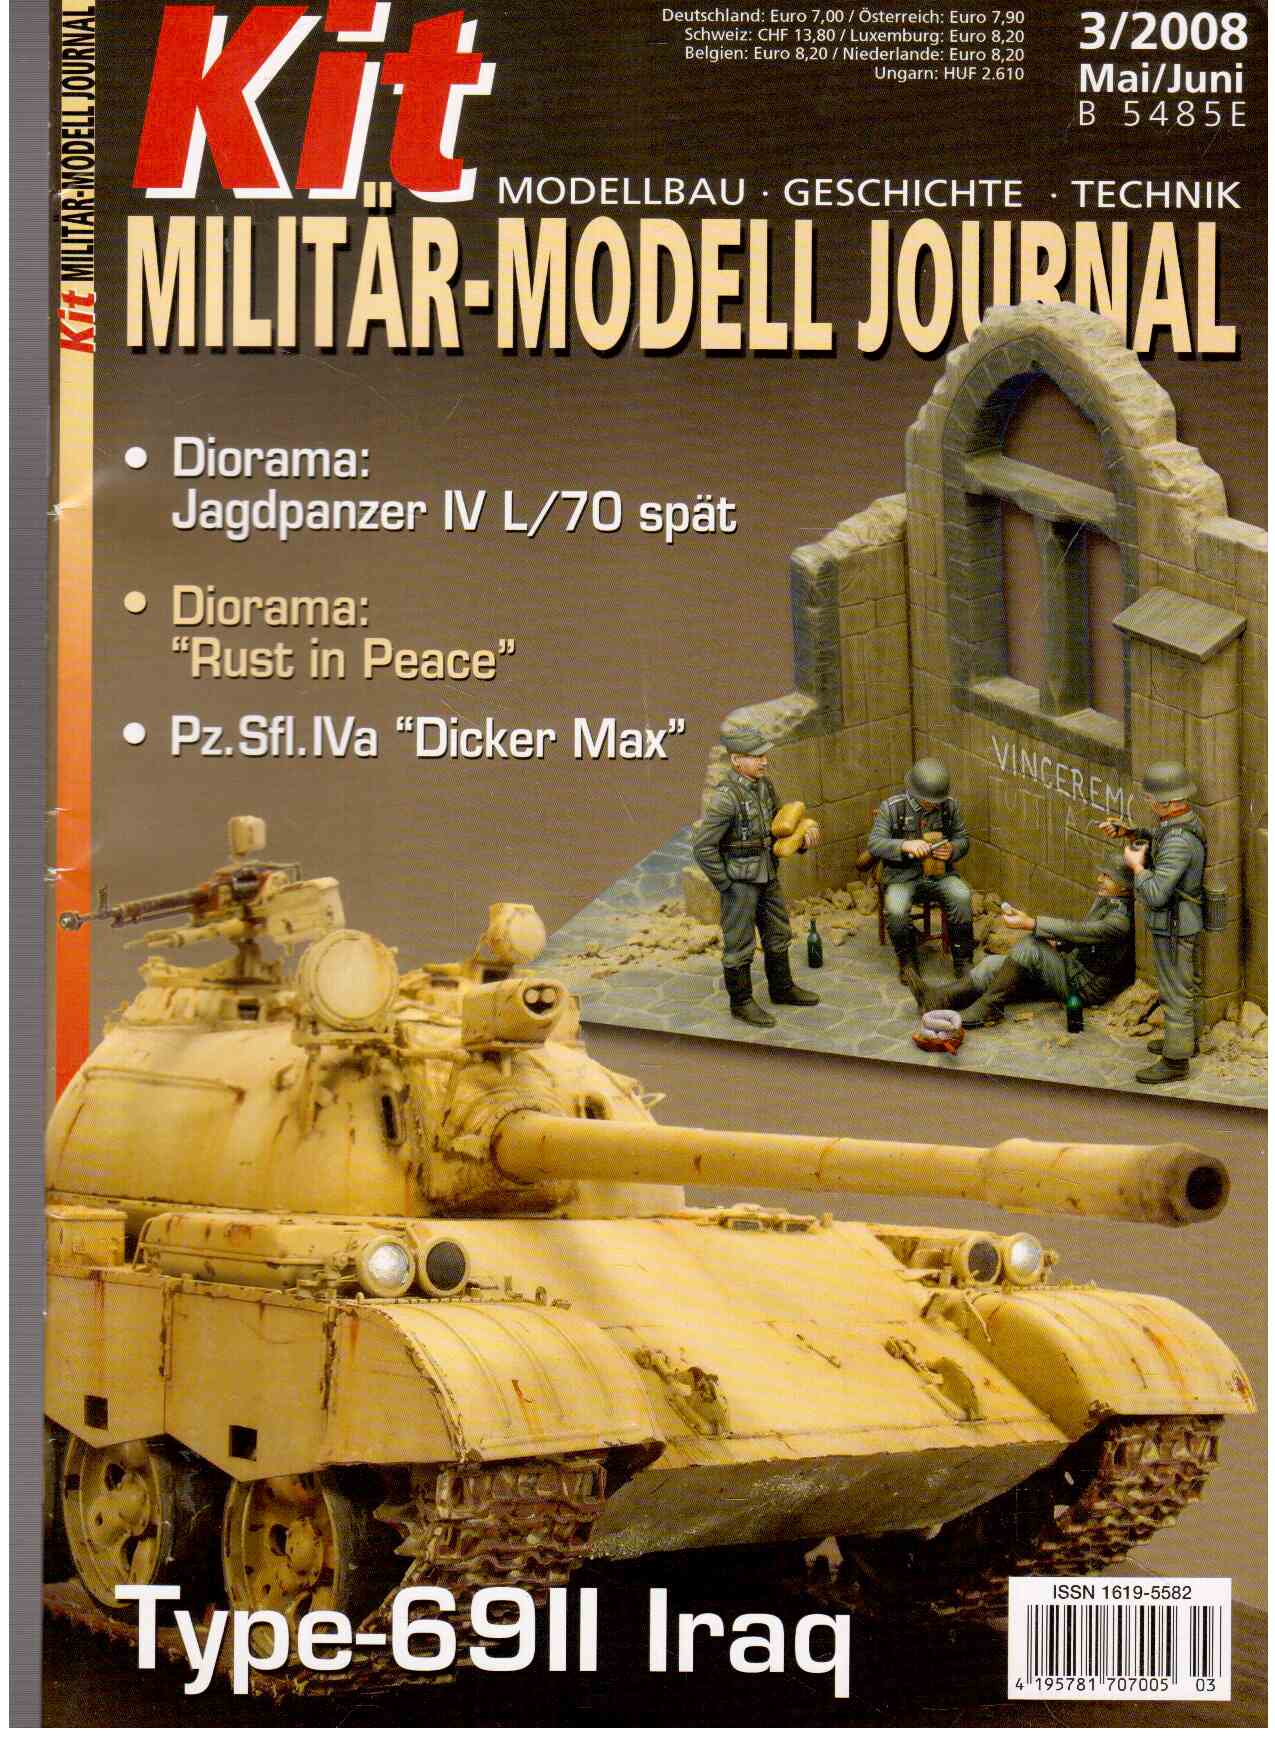 Kit. Militär-Modell Journal. Modellbau, Geschichte, Technik. Heft 3 (2008)